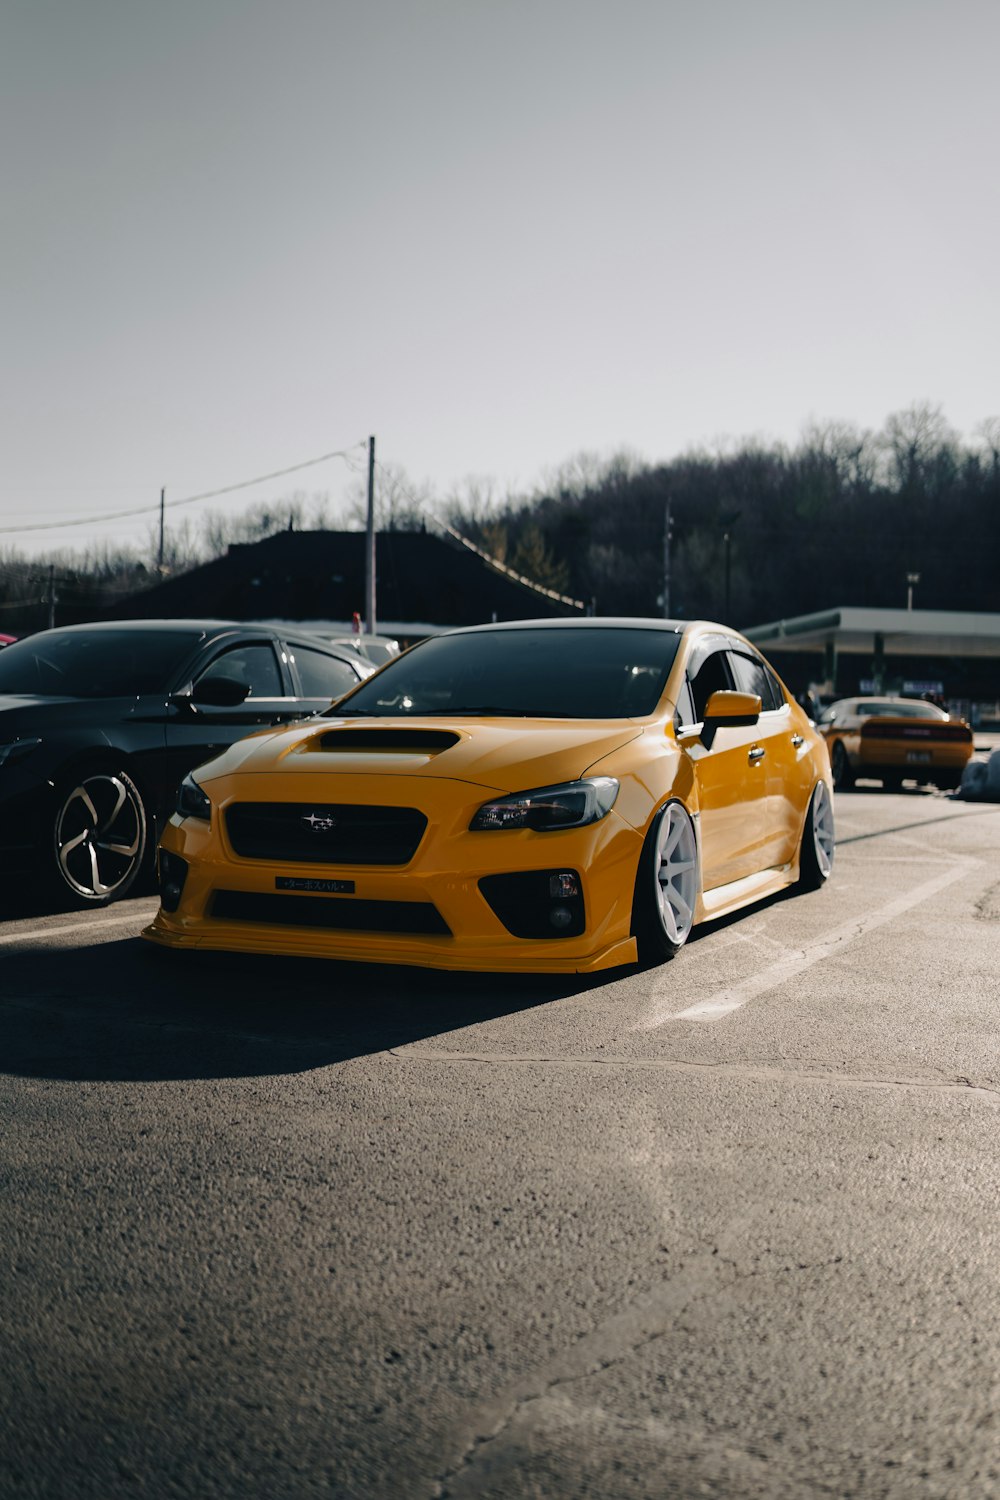 une voiture jaune est garée dans un parking